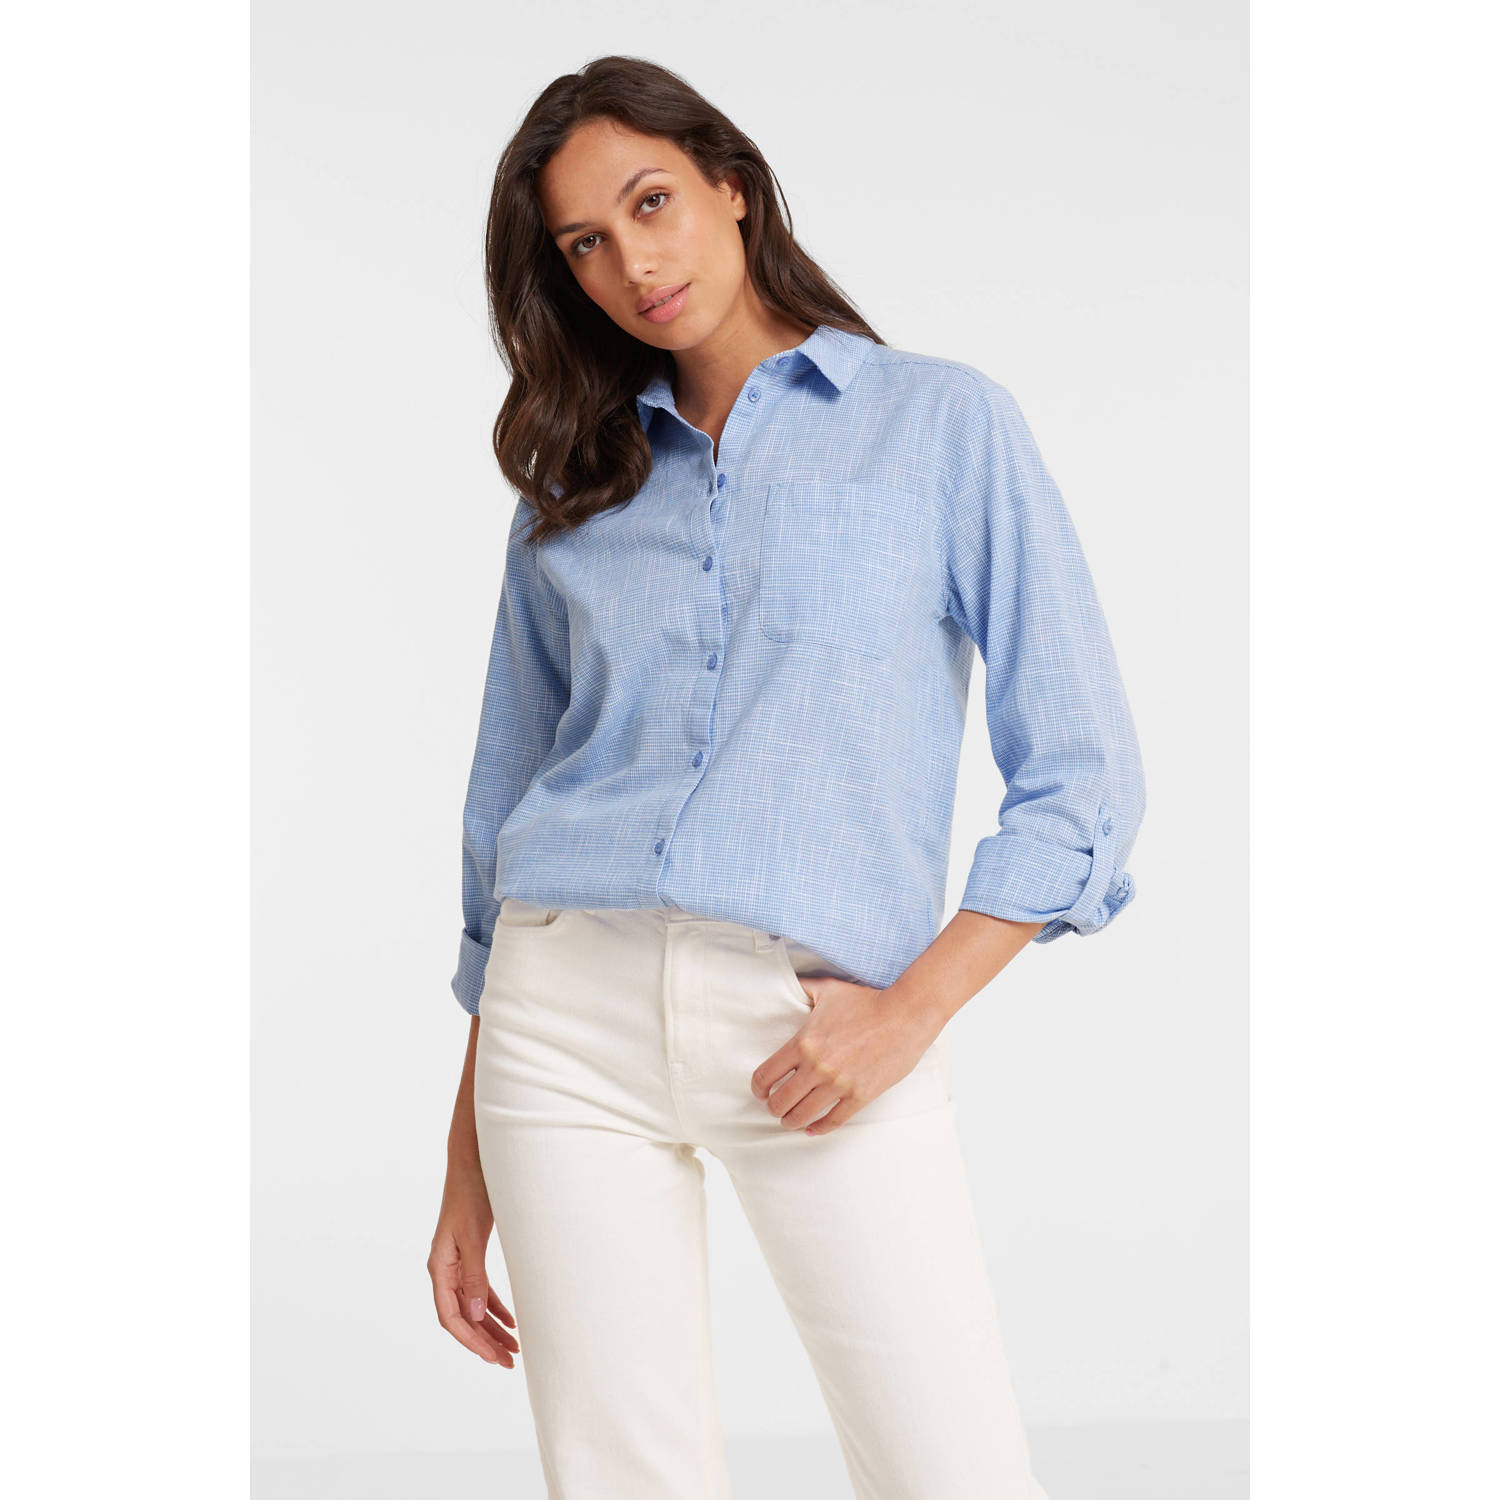 anytime blouse met klassieke kraag blauw wit